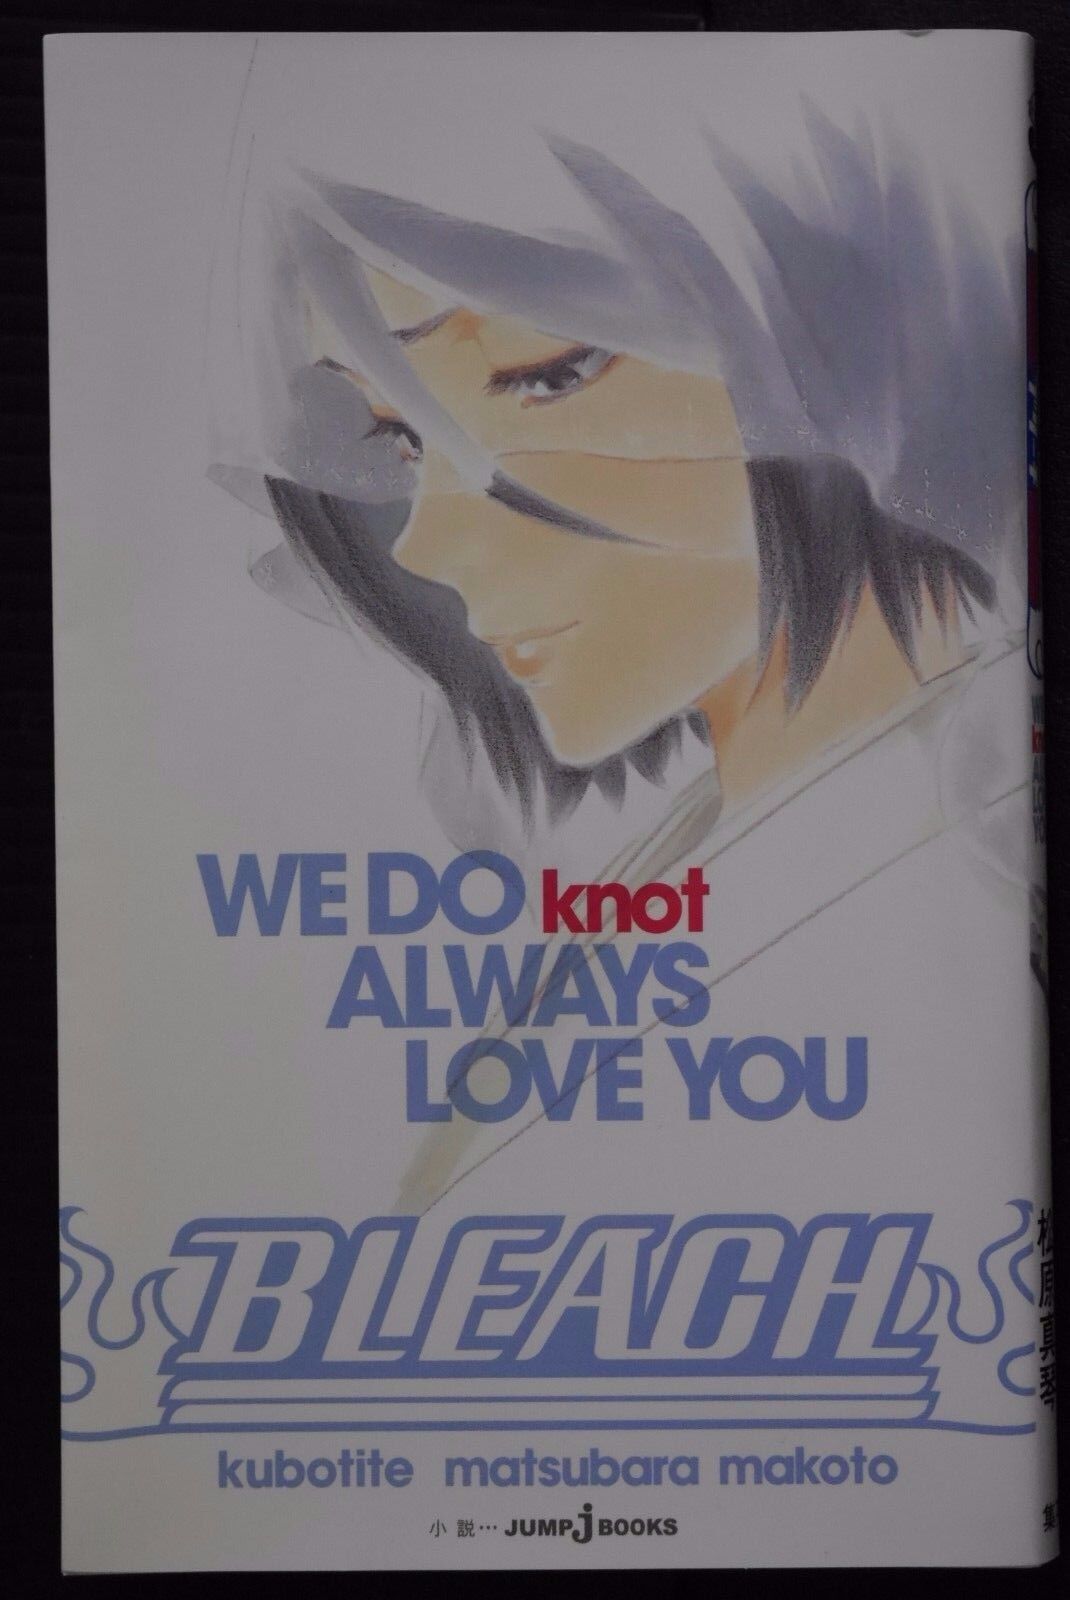 JAPAN novel: Bleach We Do knot Always Love You